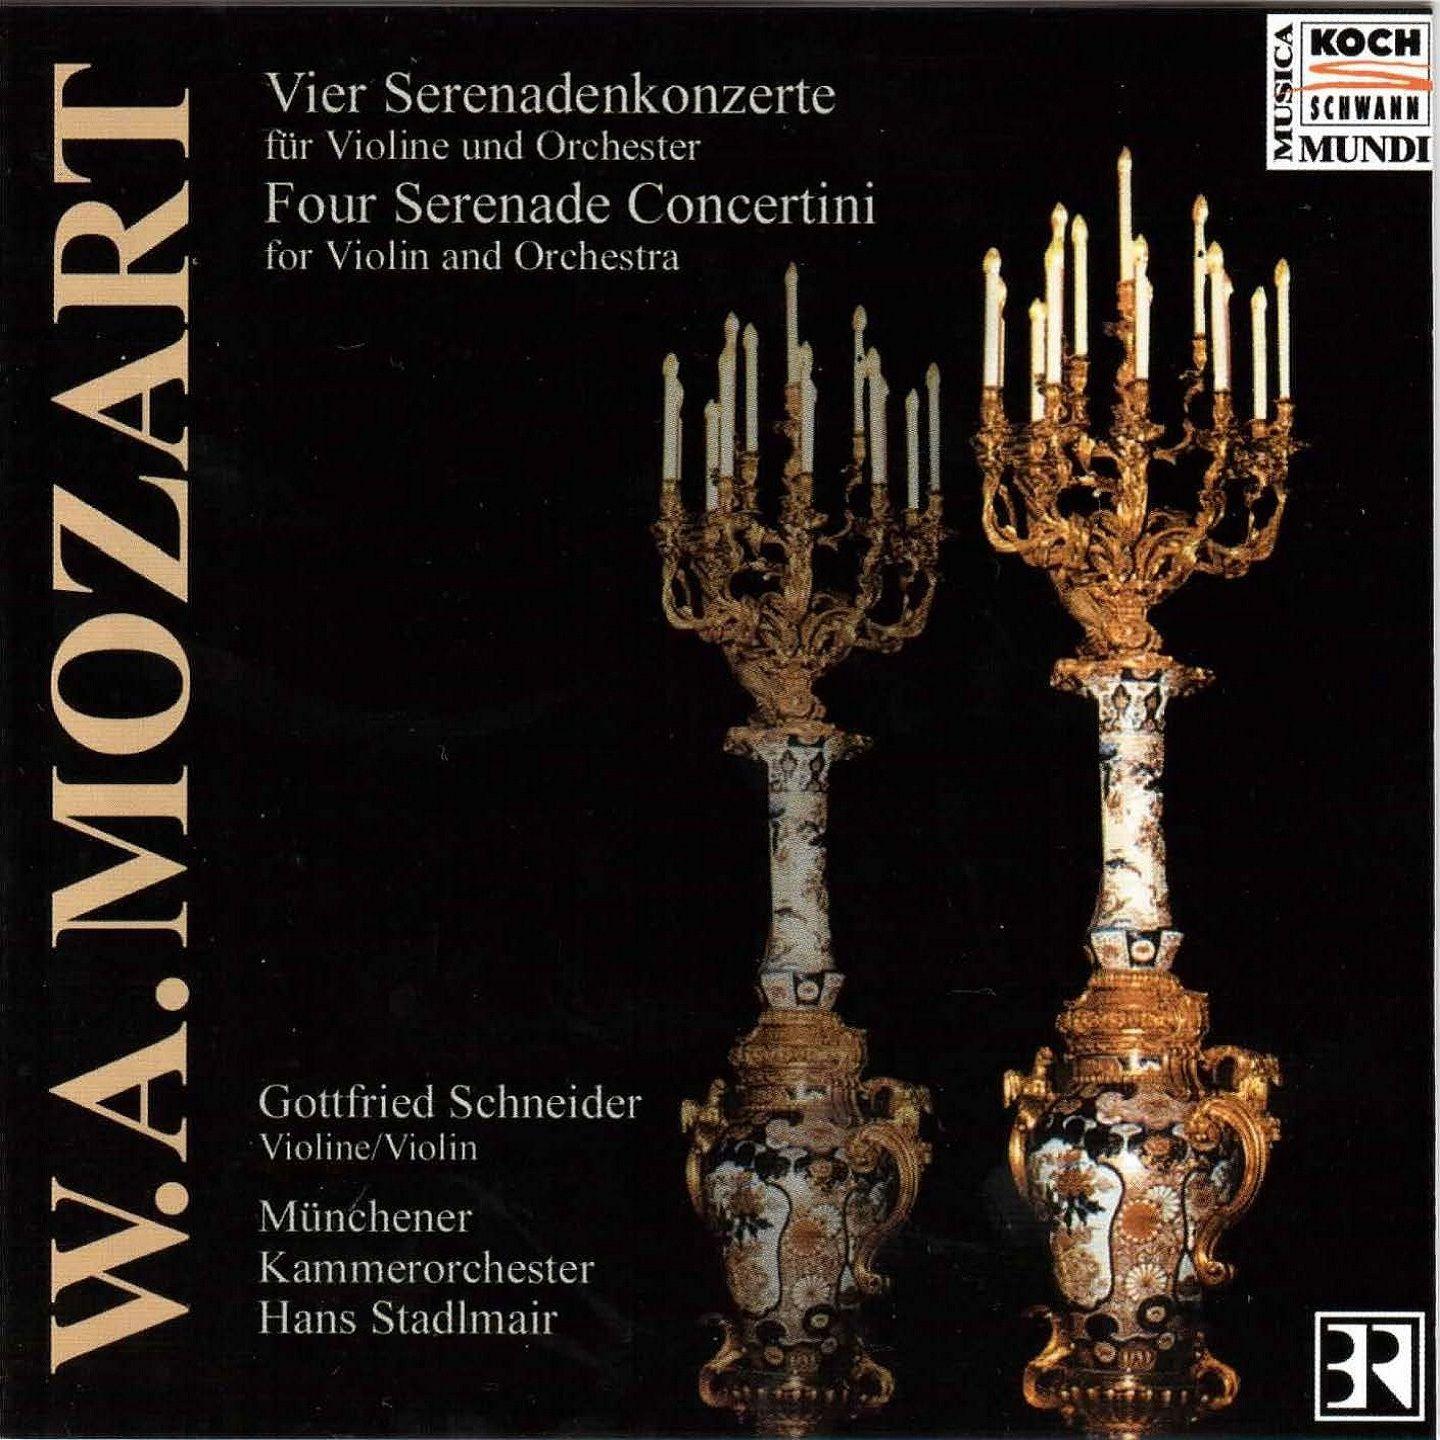 Concertino from Serenade No.3 in F Major, K.185: IV. Menuetto. Trio